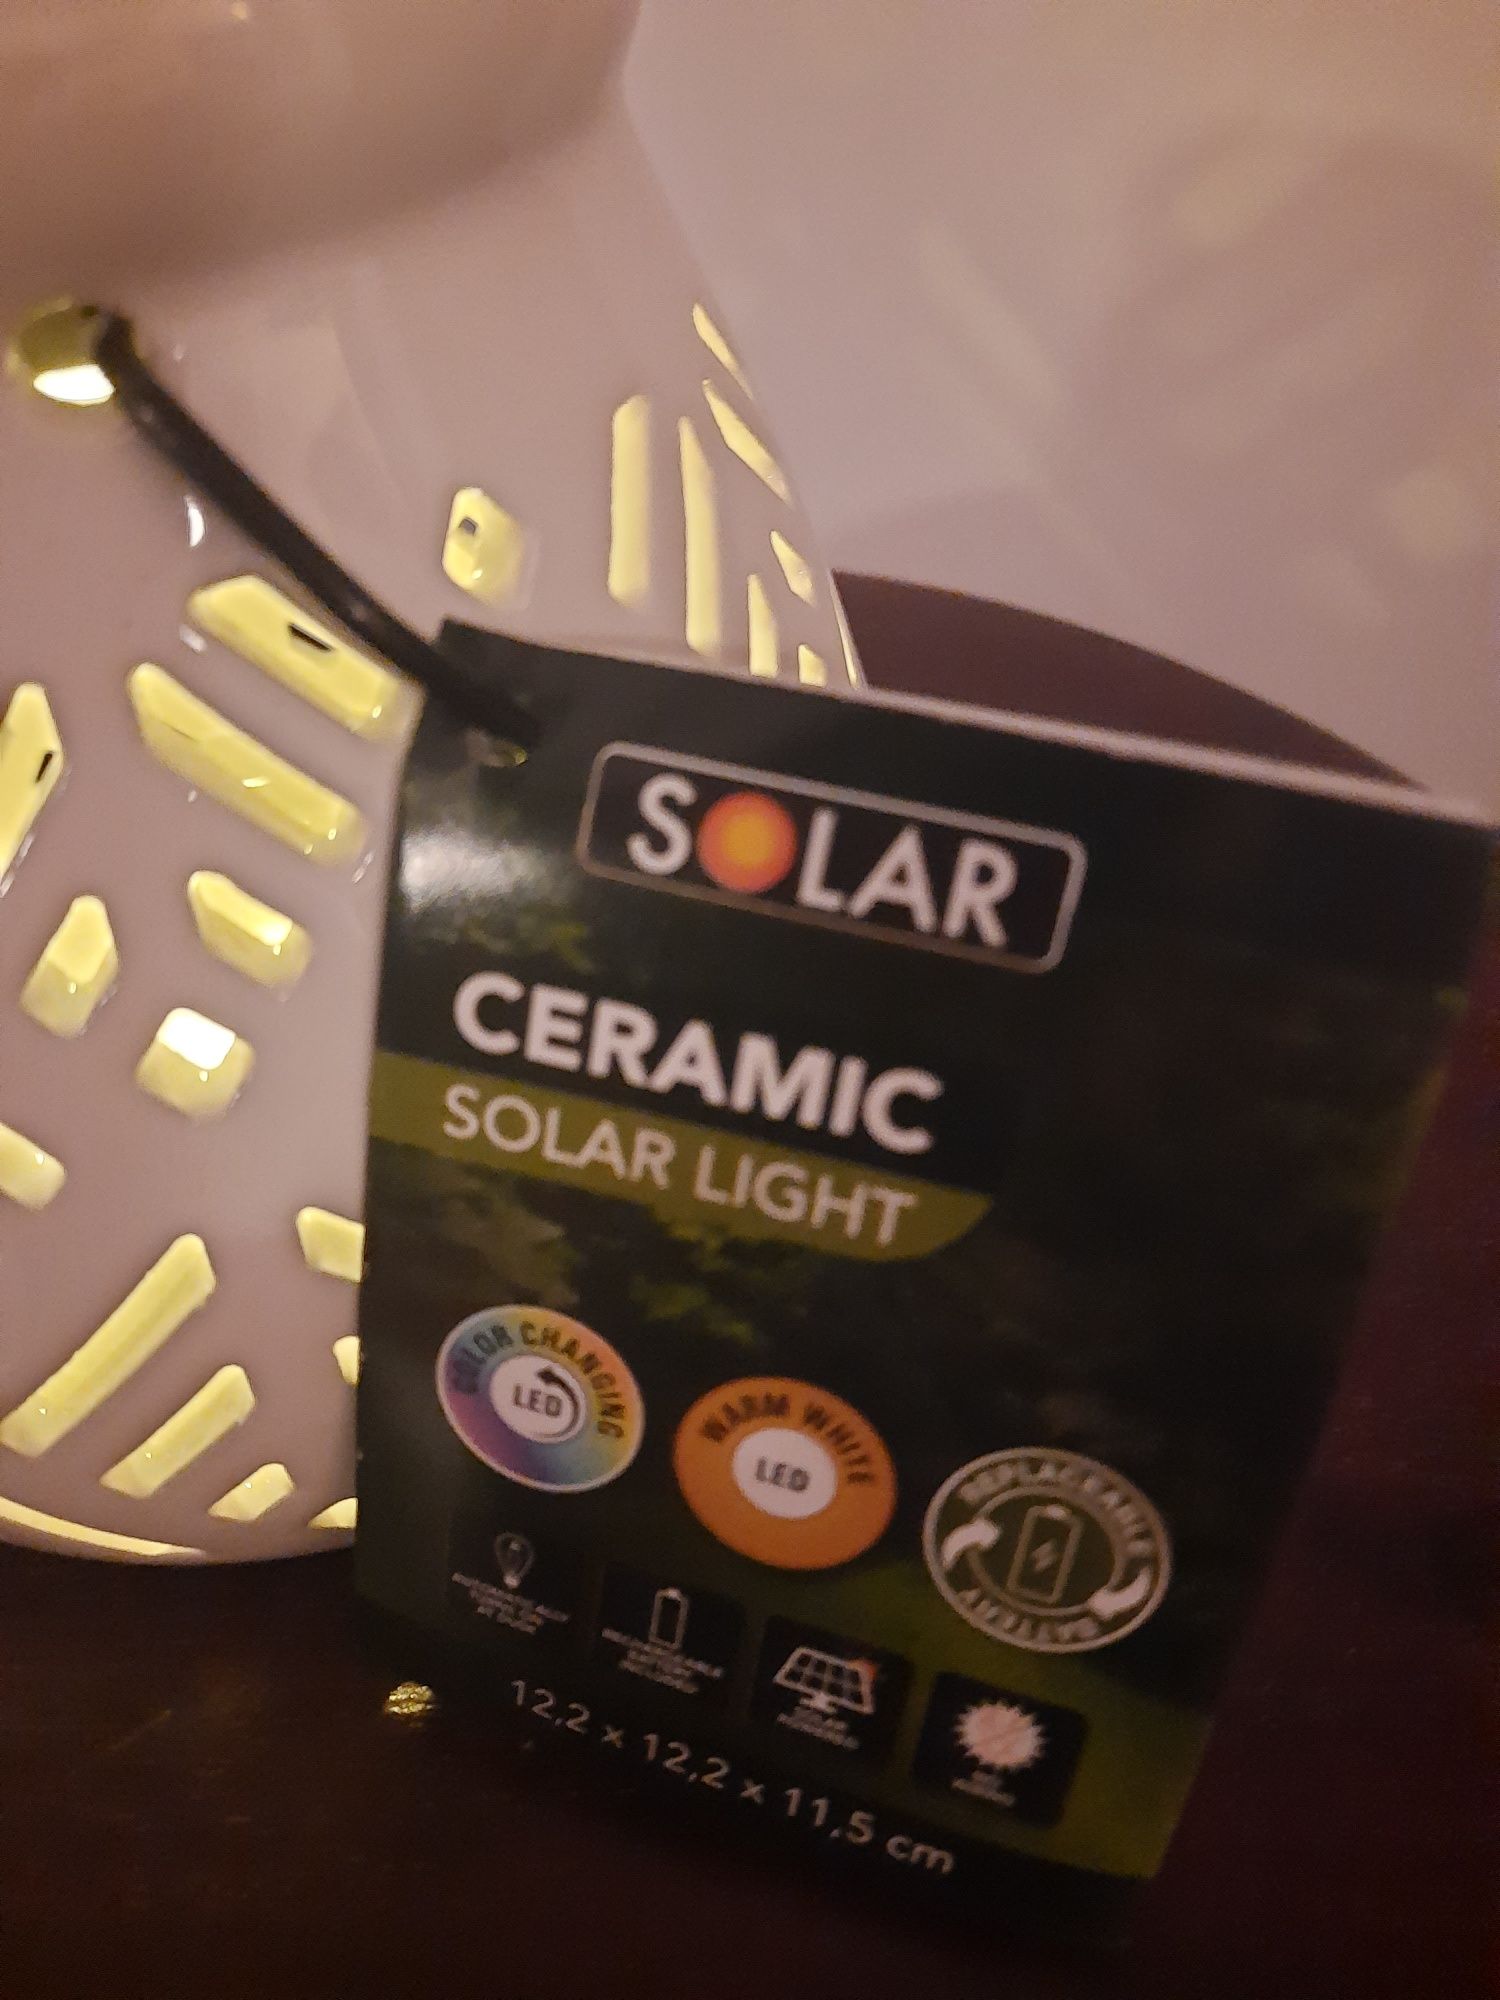 Lampion led solarny ceramiczny latarenka świeczka różne rodzaje światł